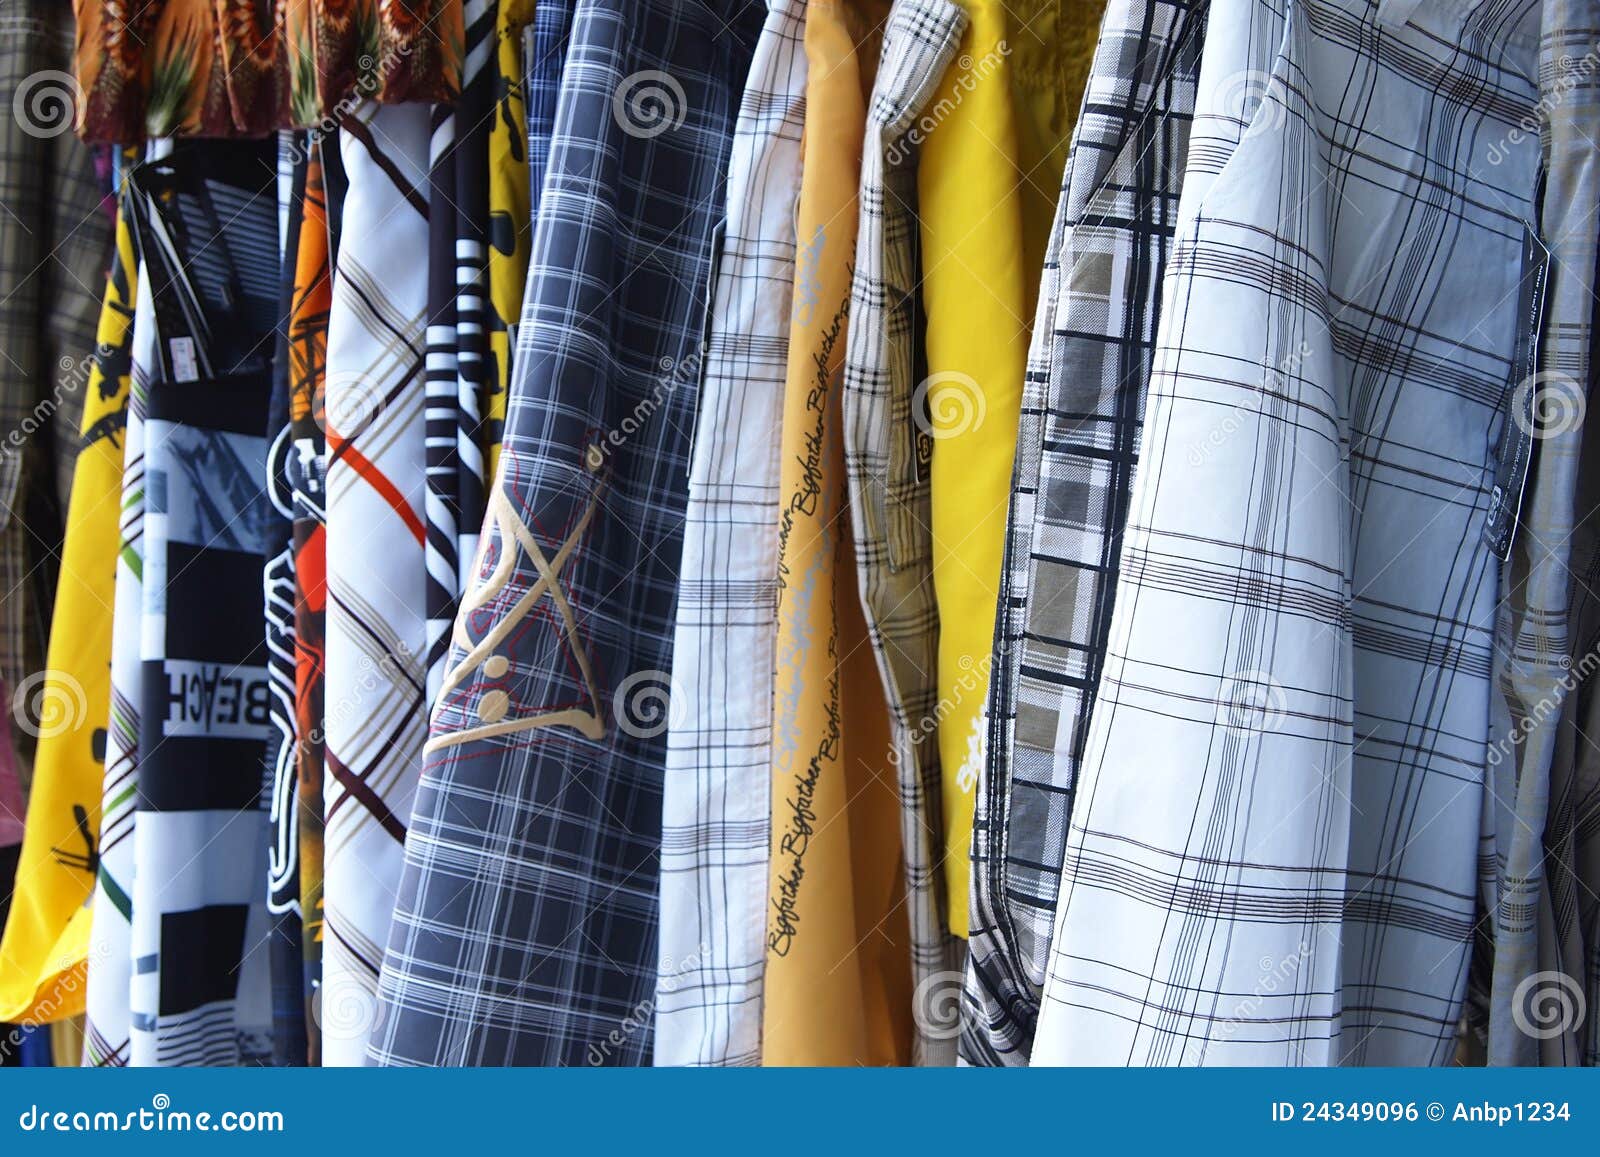 Pants pattern stock photo. Image of business, closet - 24349096